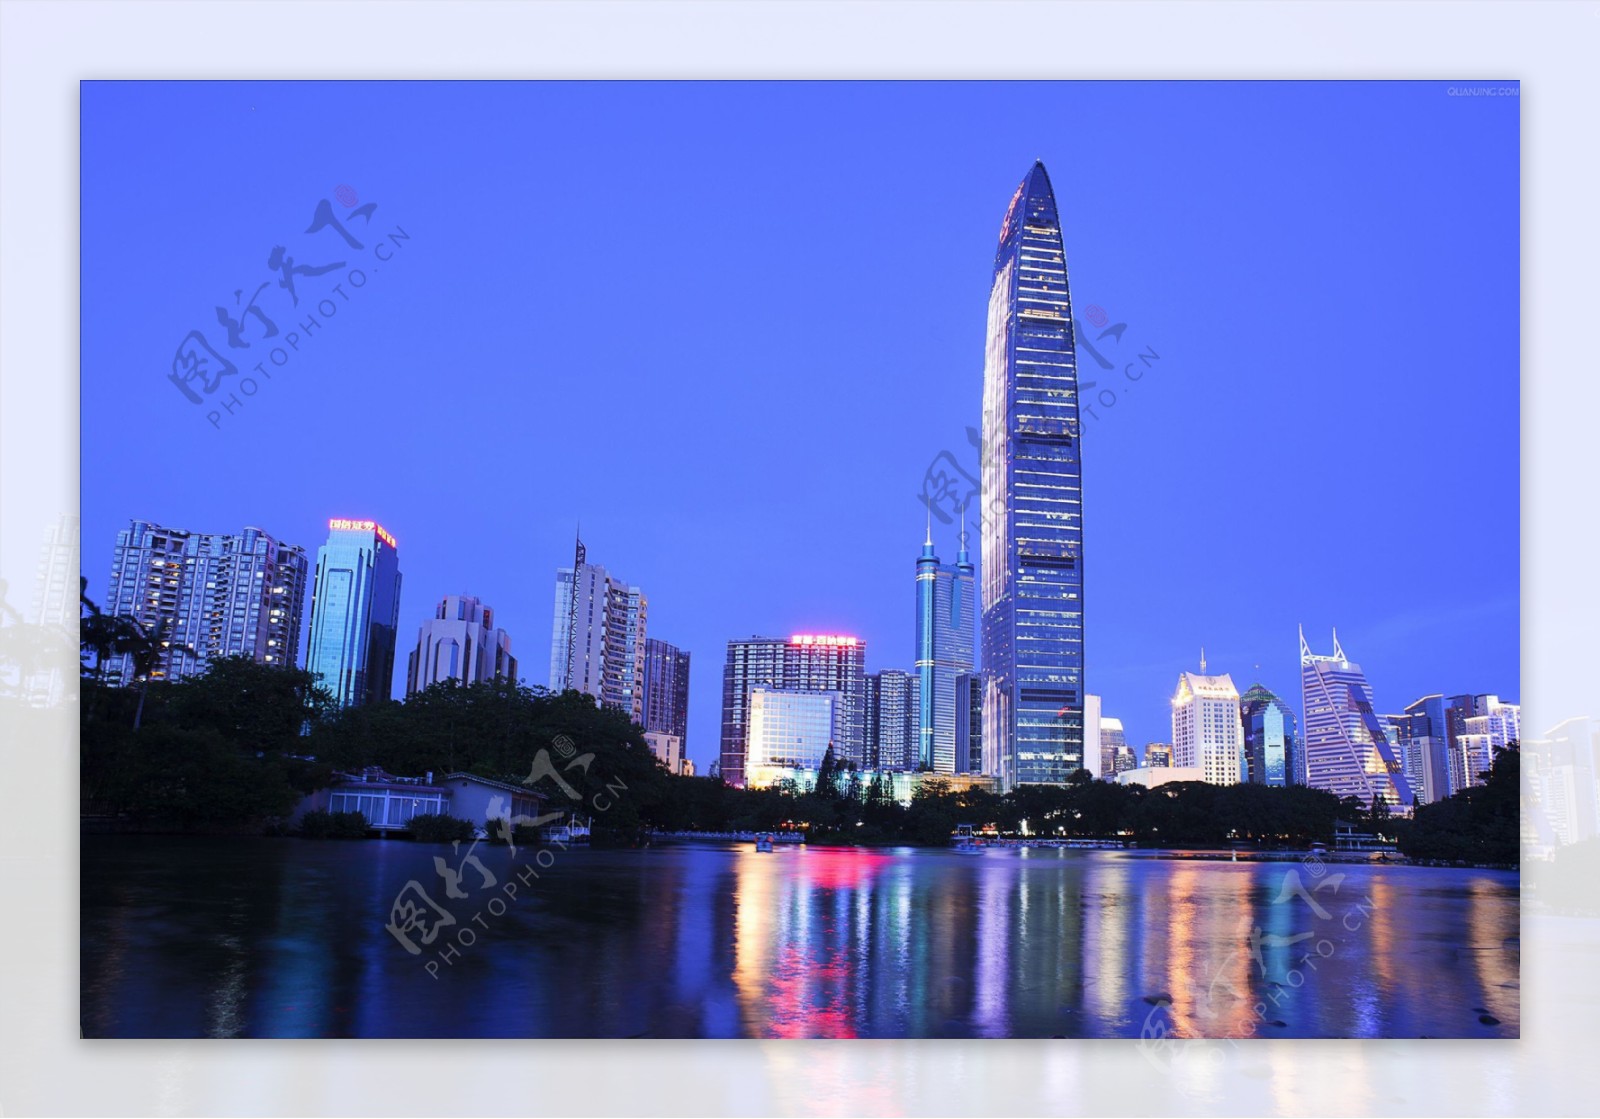 深圳城市建筑风光图片